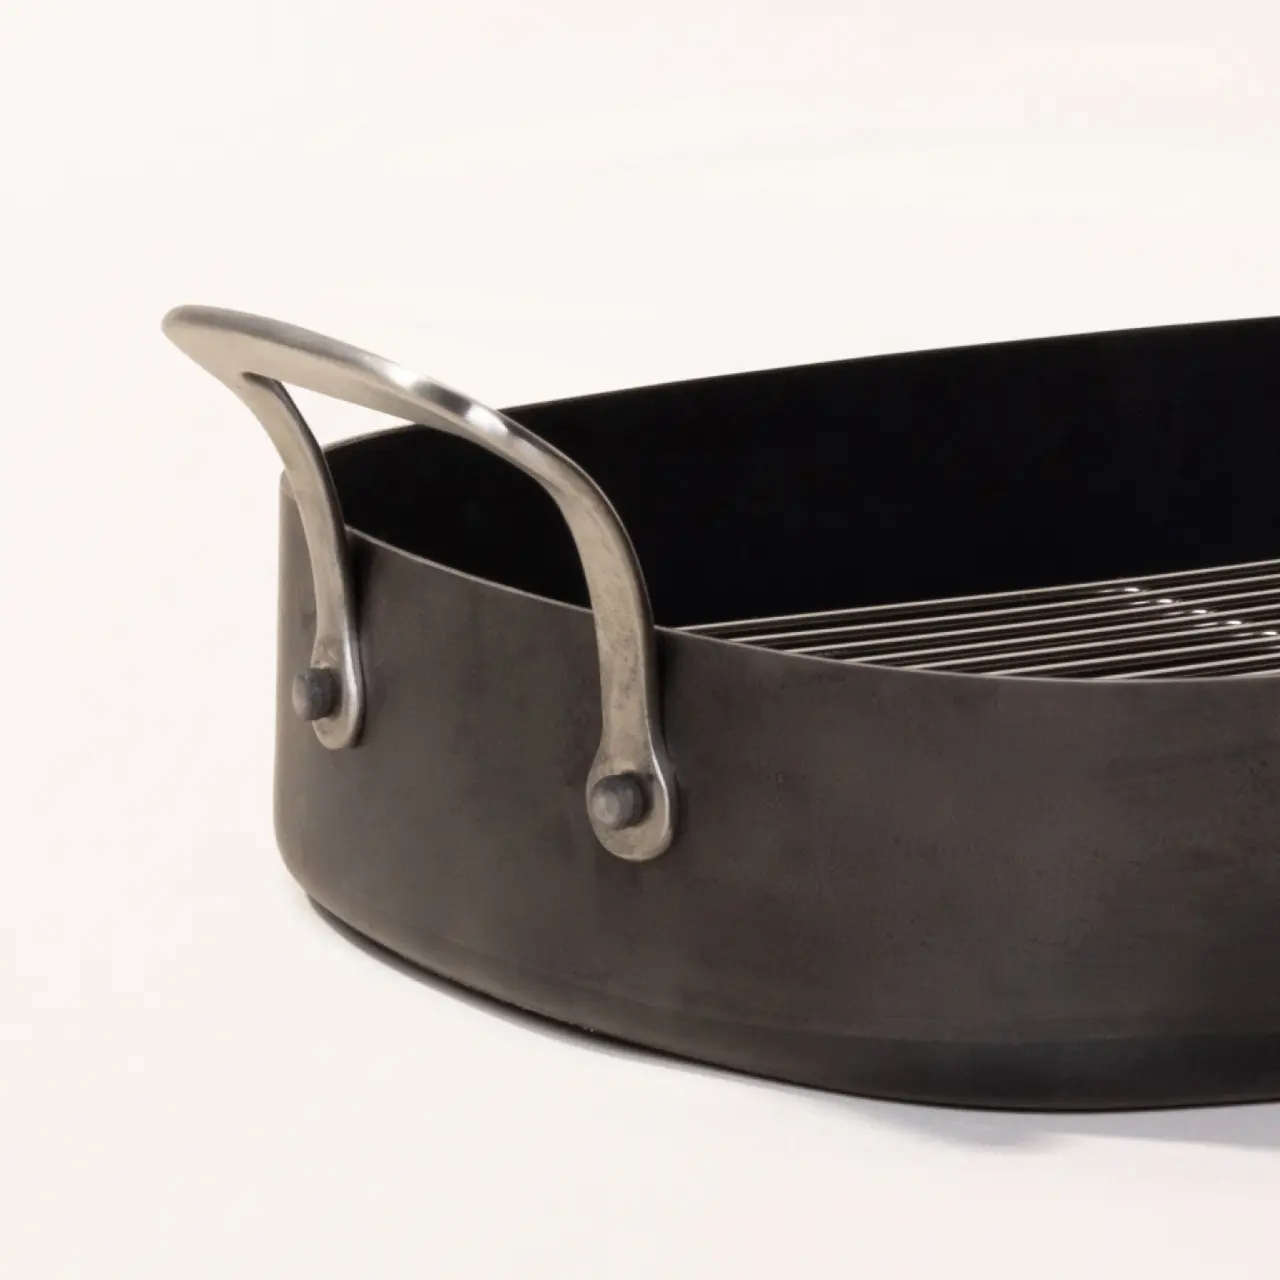 carbon steel roasting pan detail